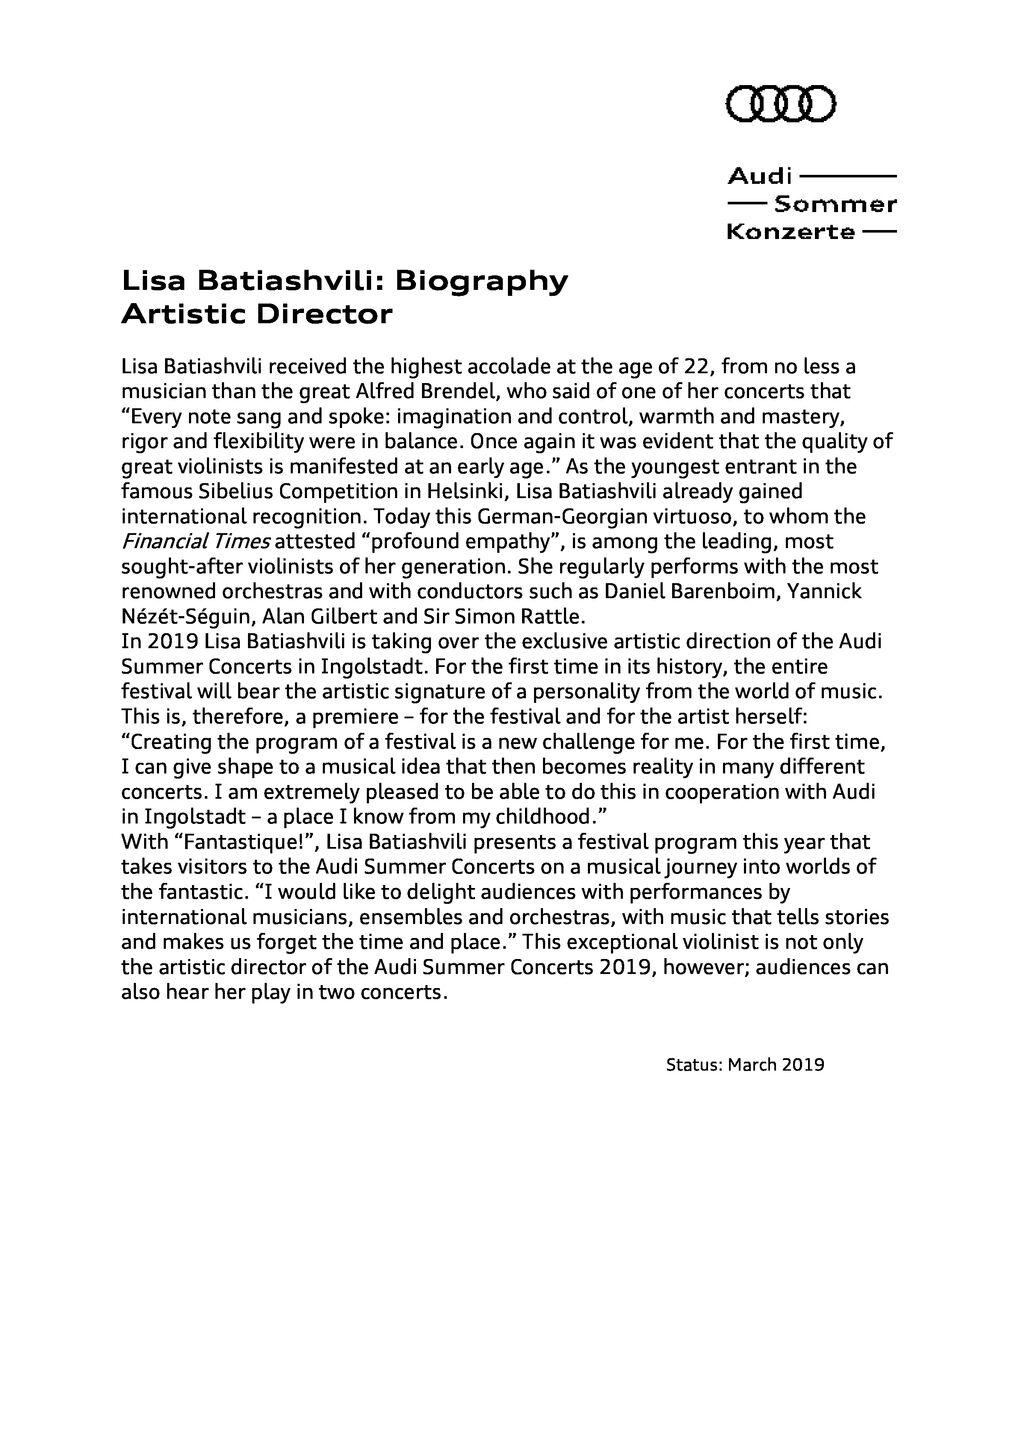 Biography Lisa Batiashvili